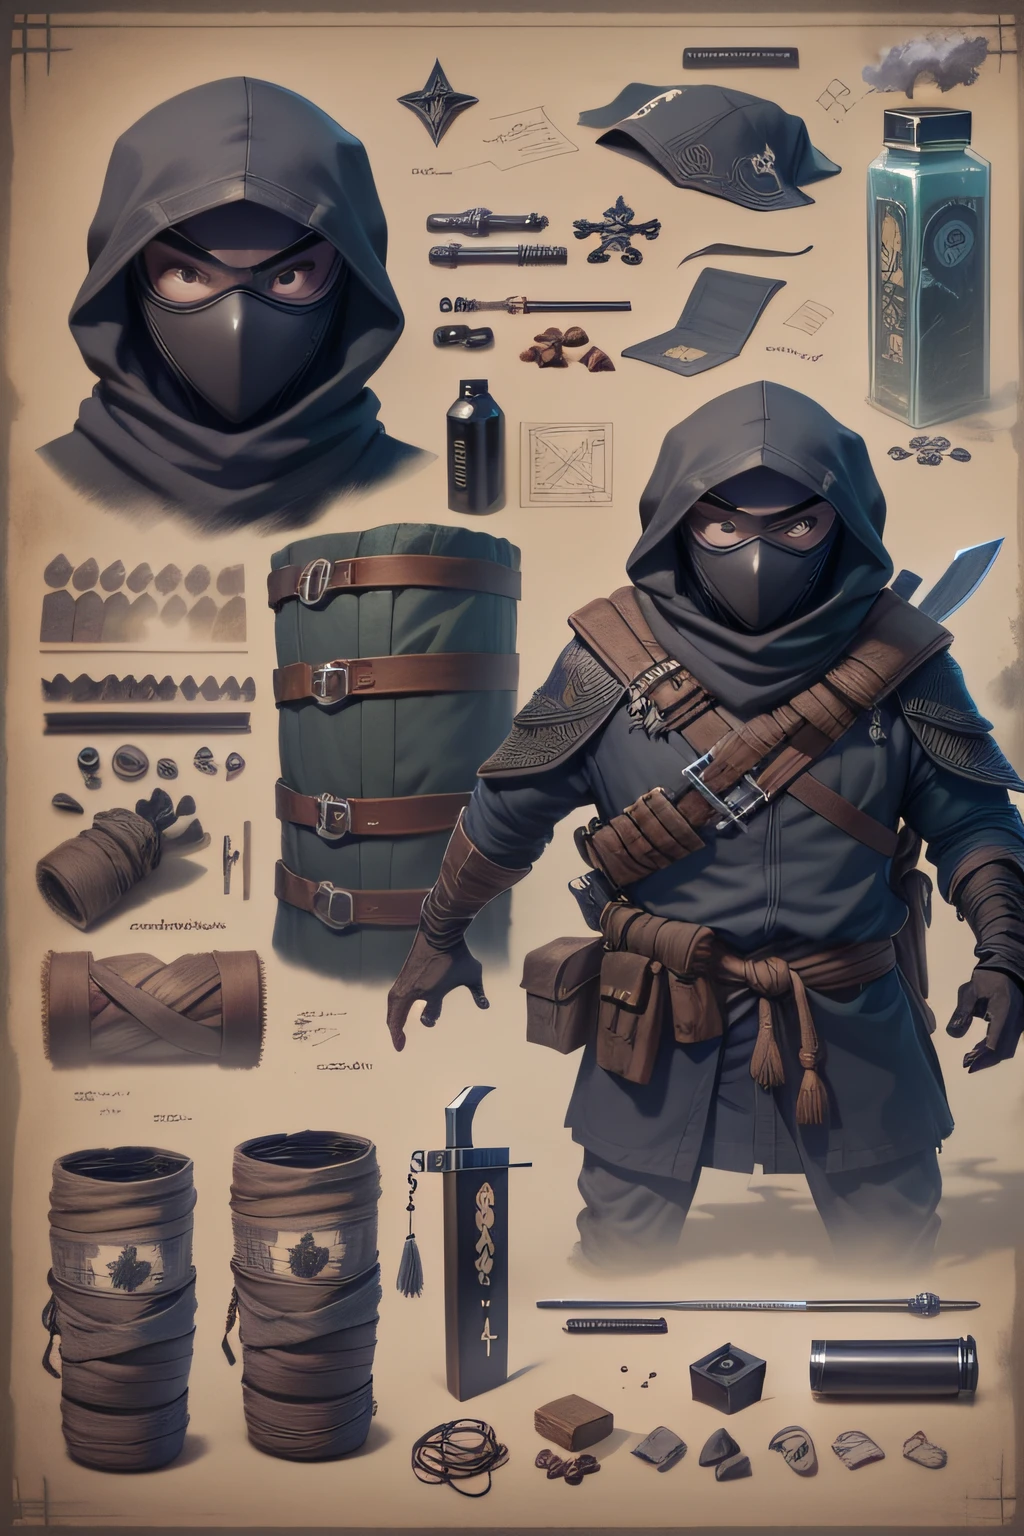 蓝图 一名狡猾的忍者隐藏在阴影中，准备伏击敌人. 

侧面列出的物品和装备:
- 黑色面具和服装 - 钢手里剑 - 忍者剑 - 烟雾弹